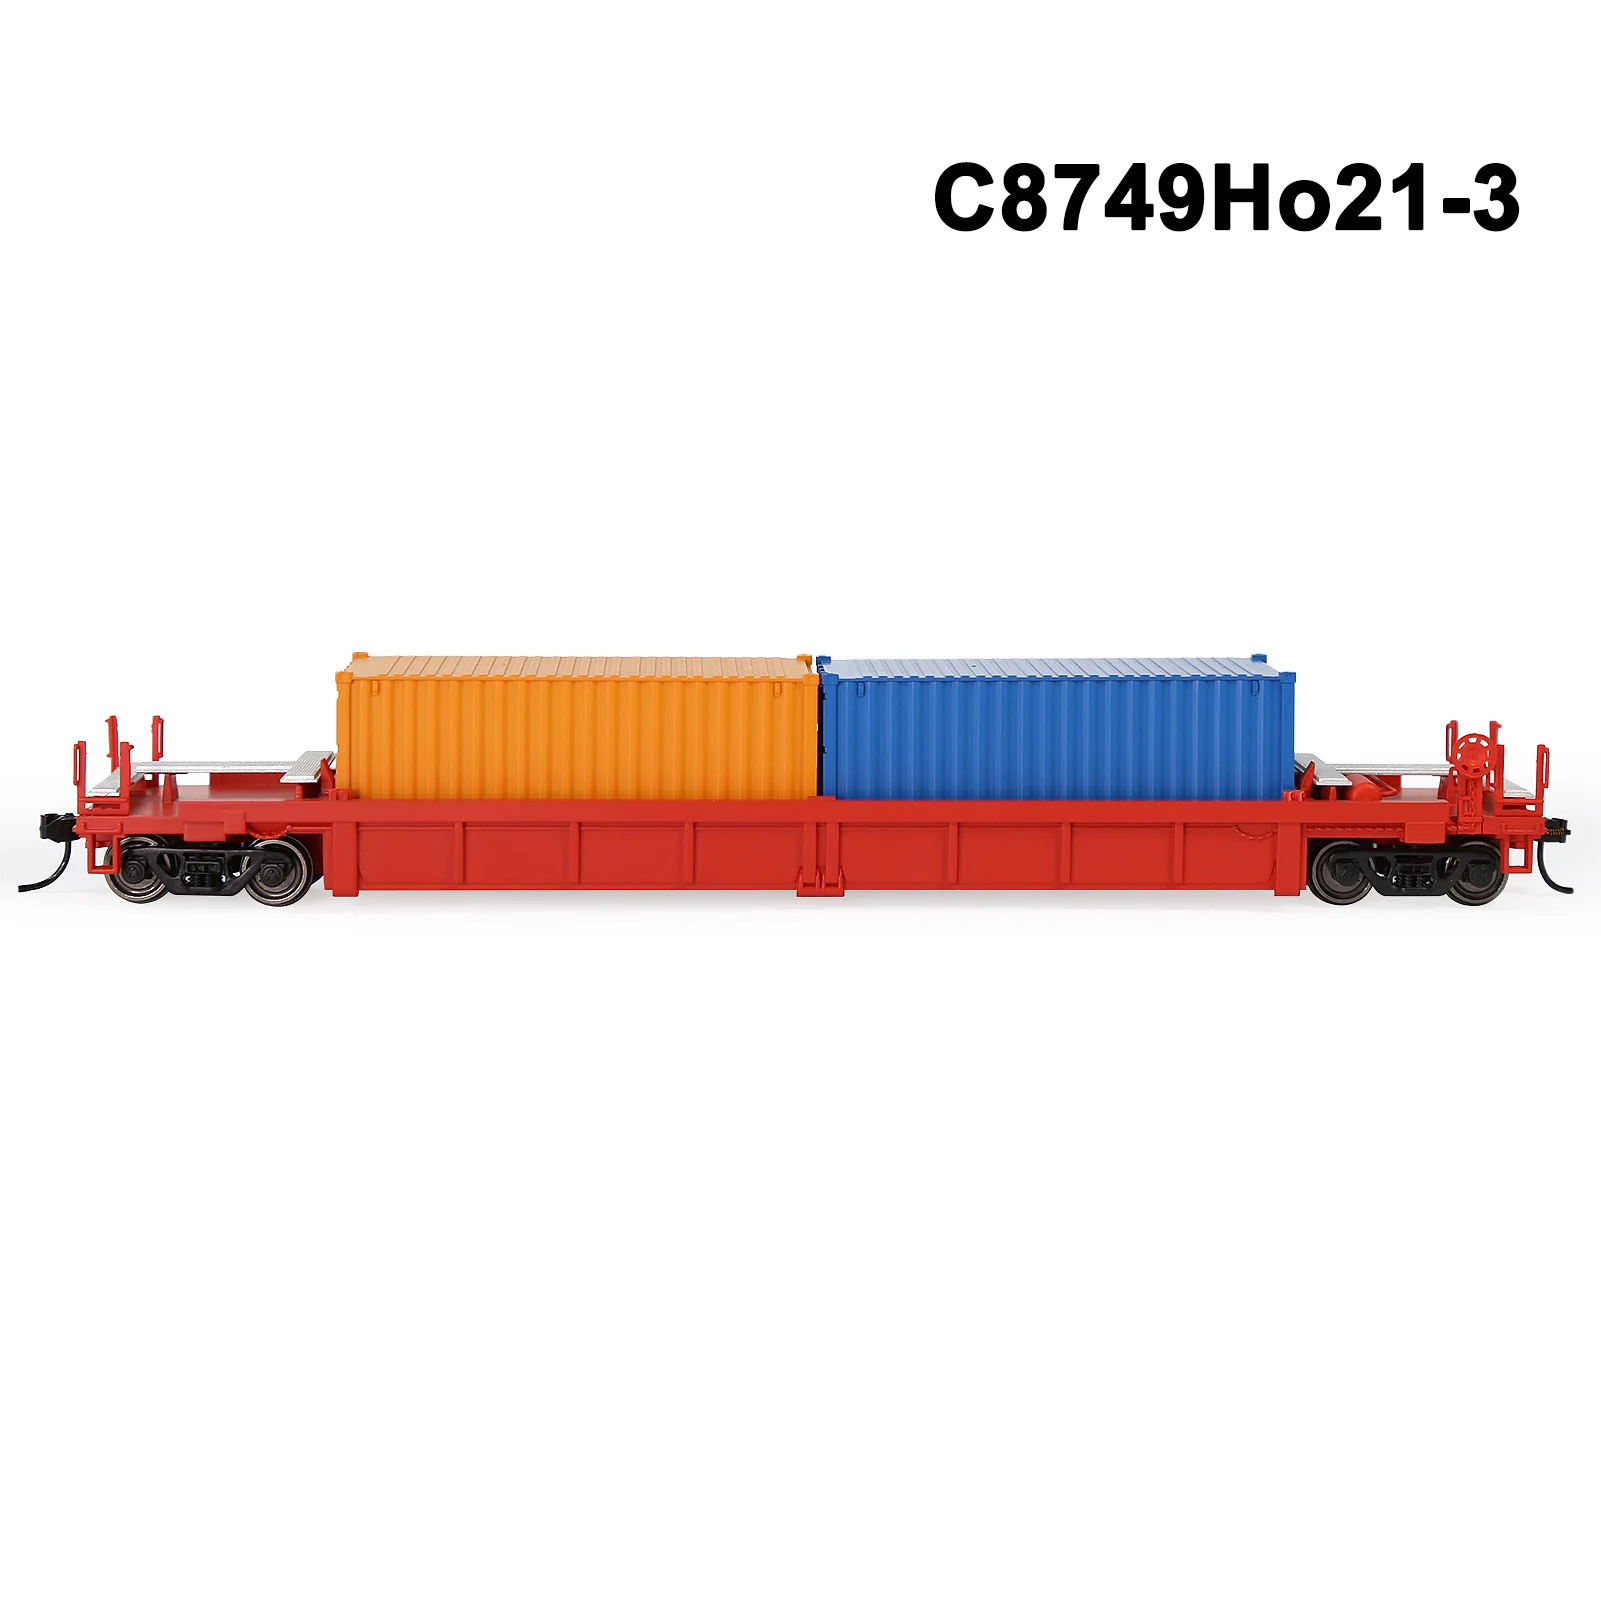 C8749Ho21-3